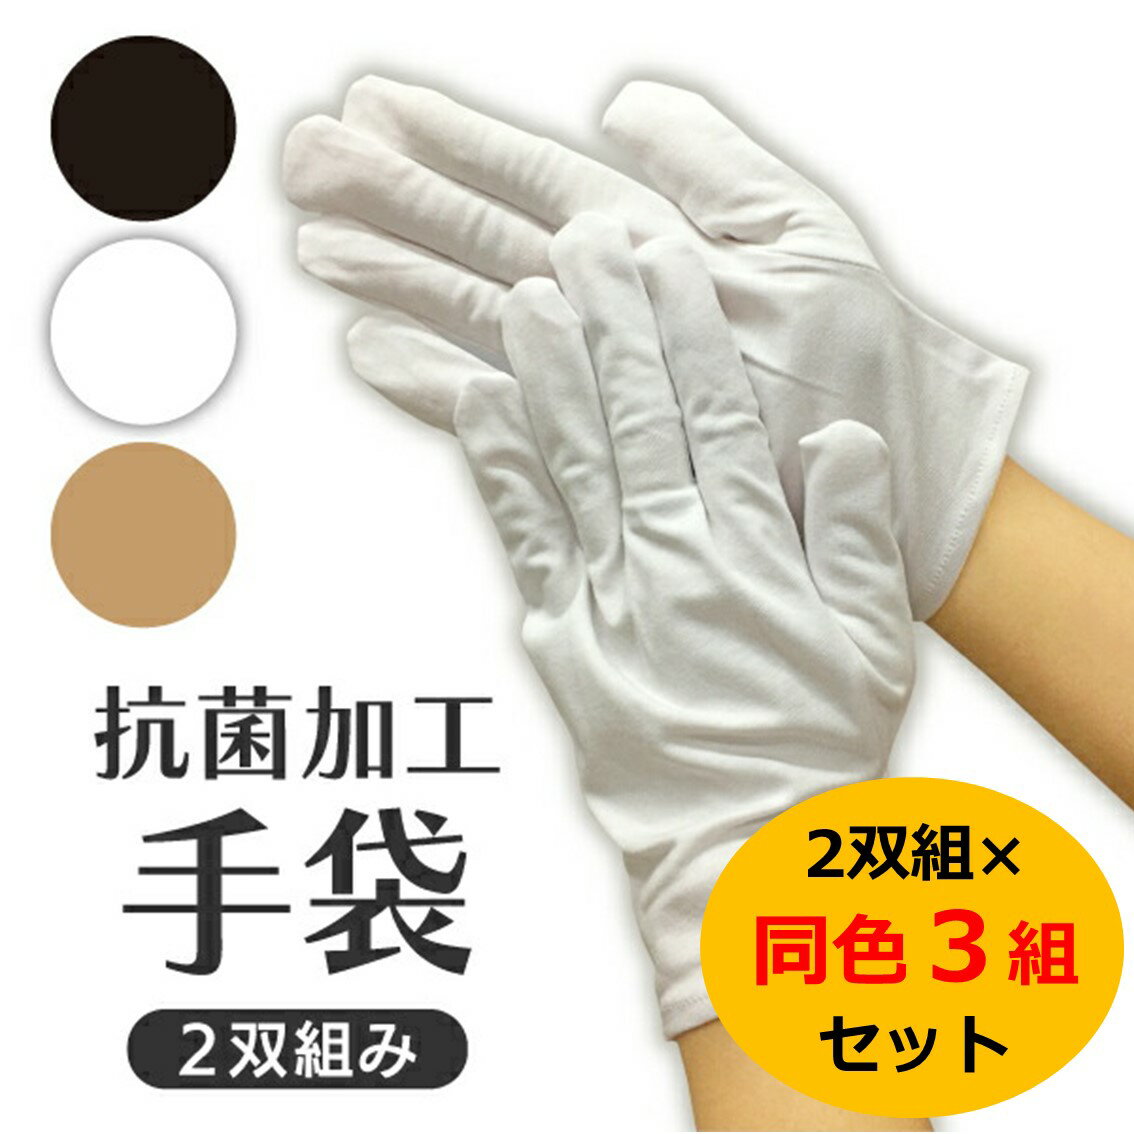 抗菌手袋 3組セット 抗ウイルス 接触予防手袋 2双組 全3